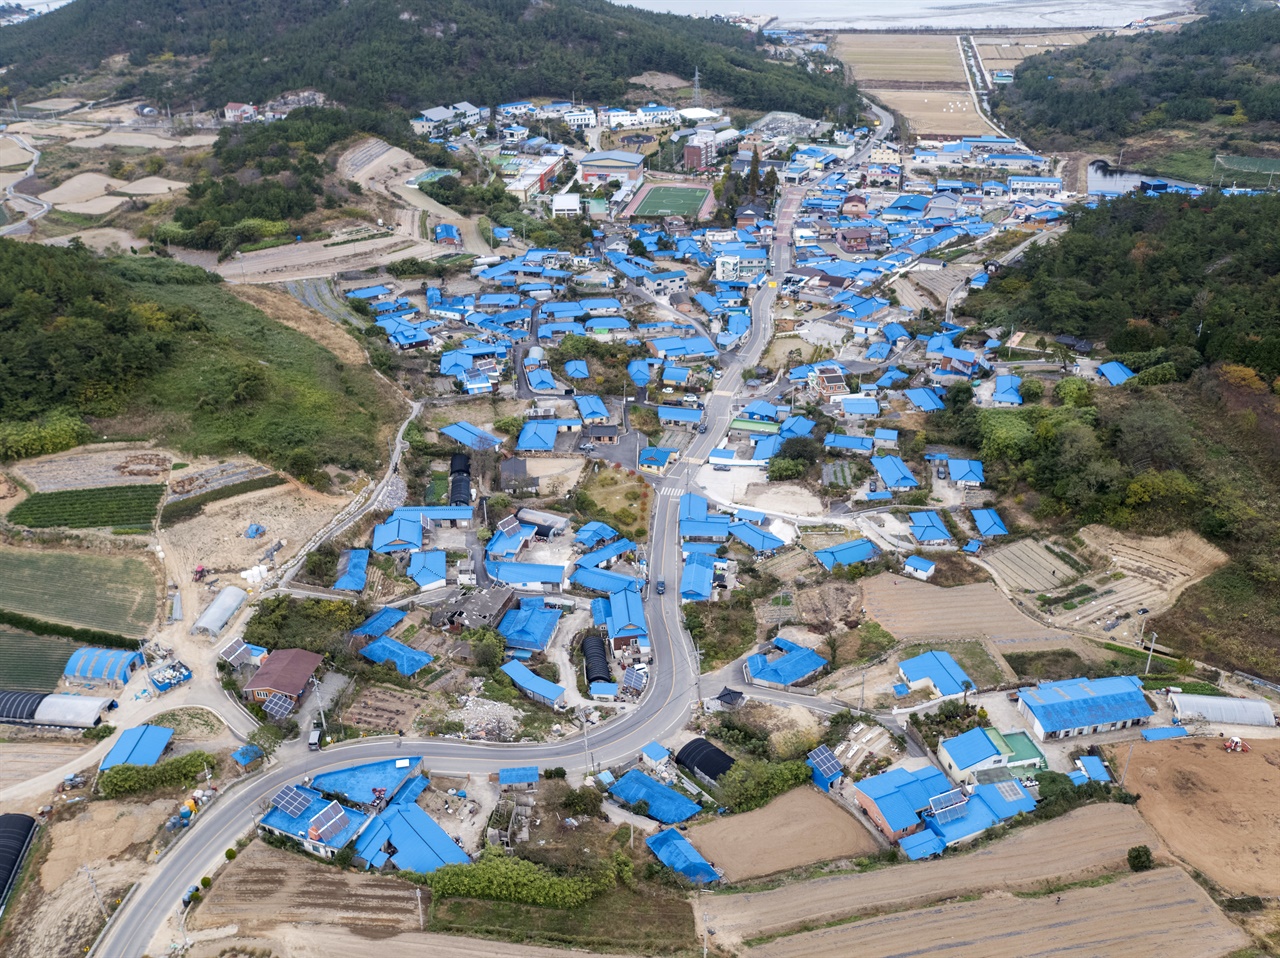 김환기 고향인 안좌면 읍동리 일대의 푸른색 지붕들. 김환기 그림의 푸른 색조를 반영한 것이다.